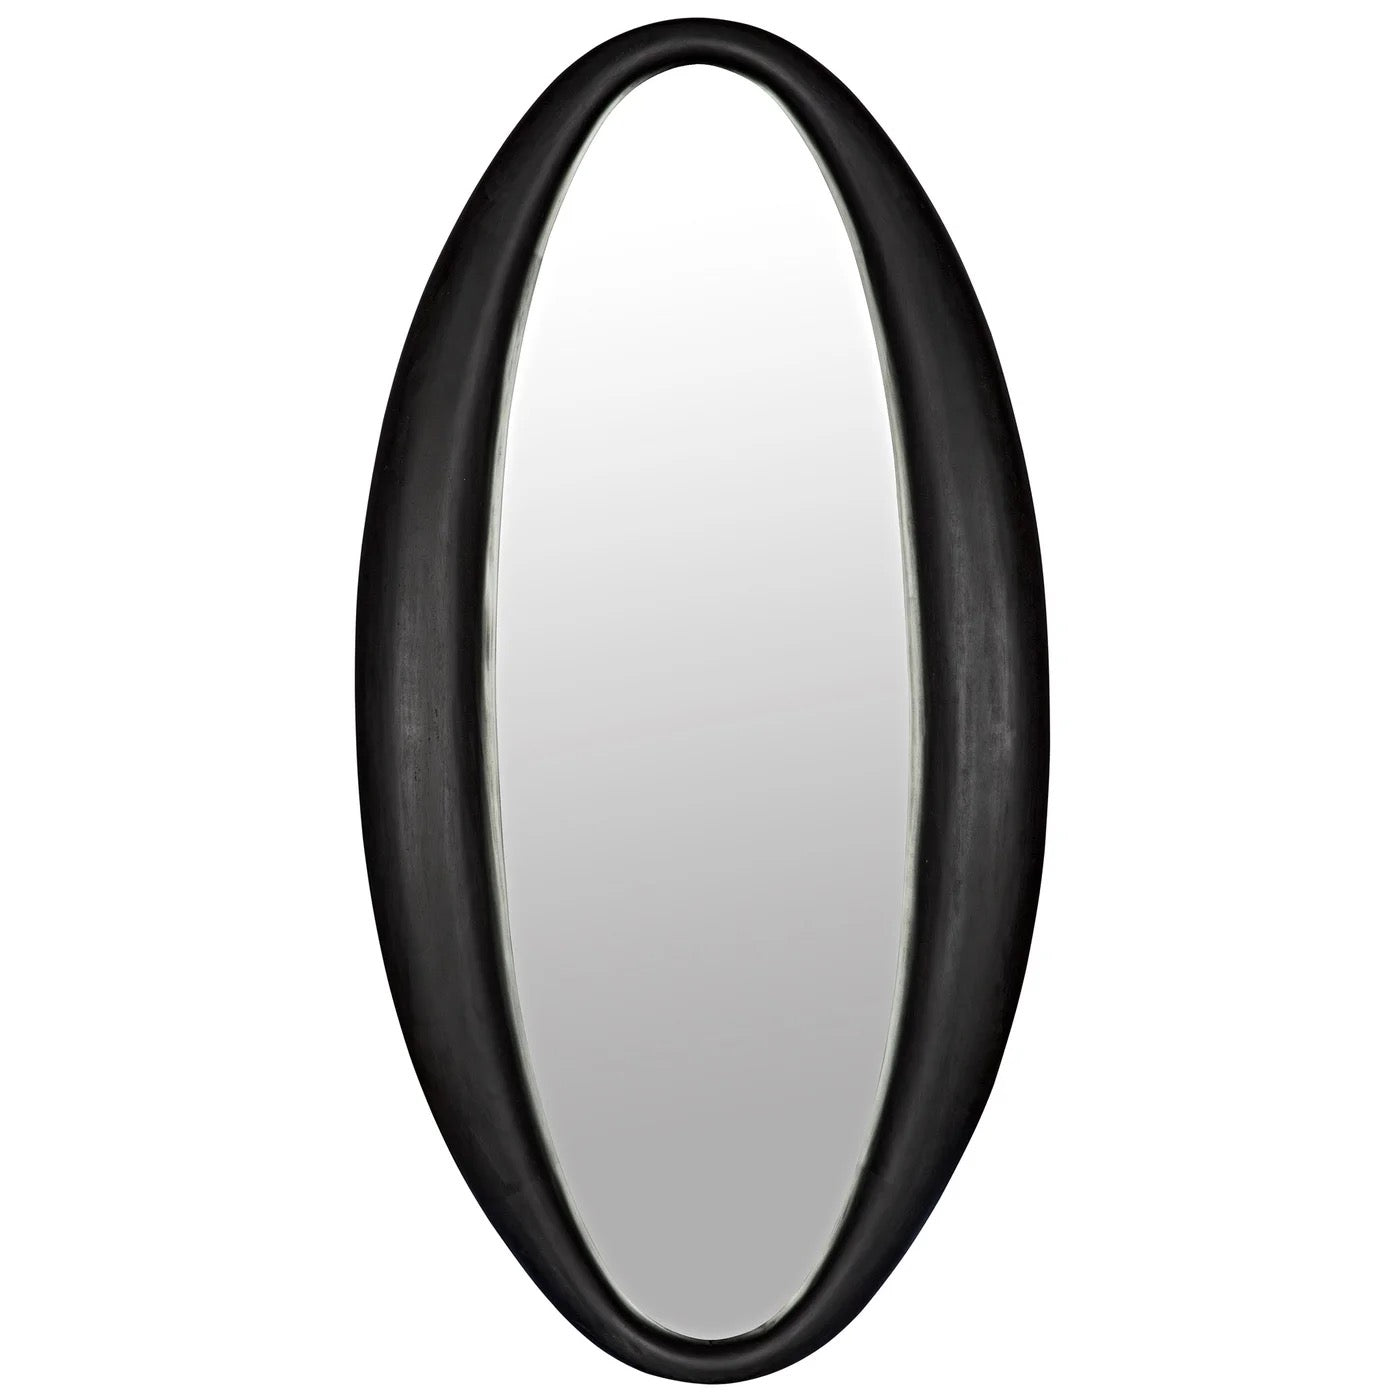 Portal Mirror